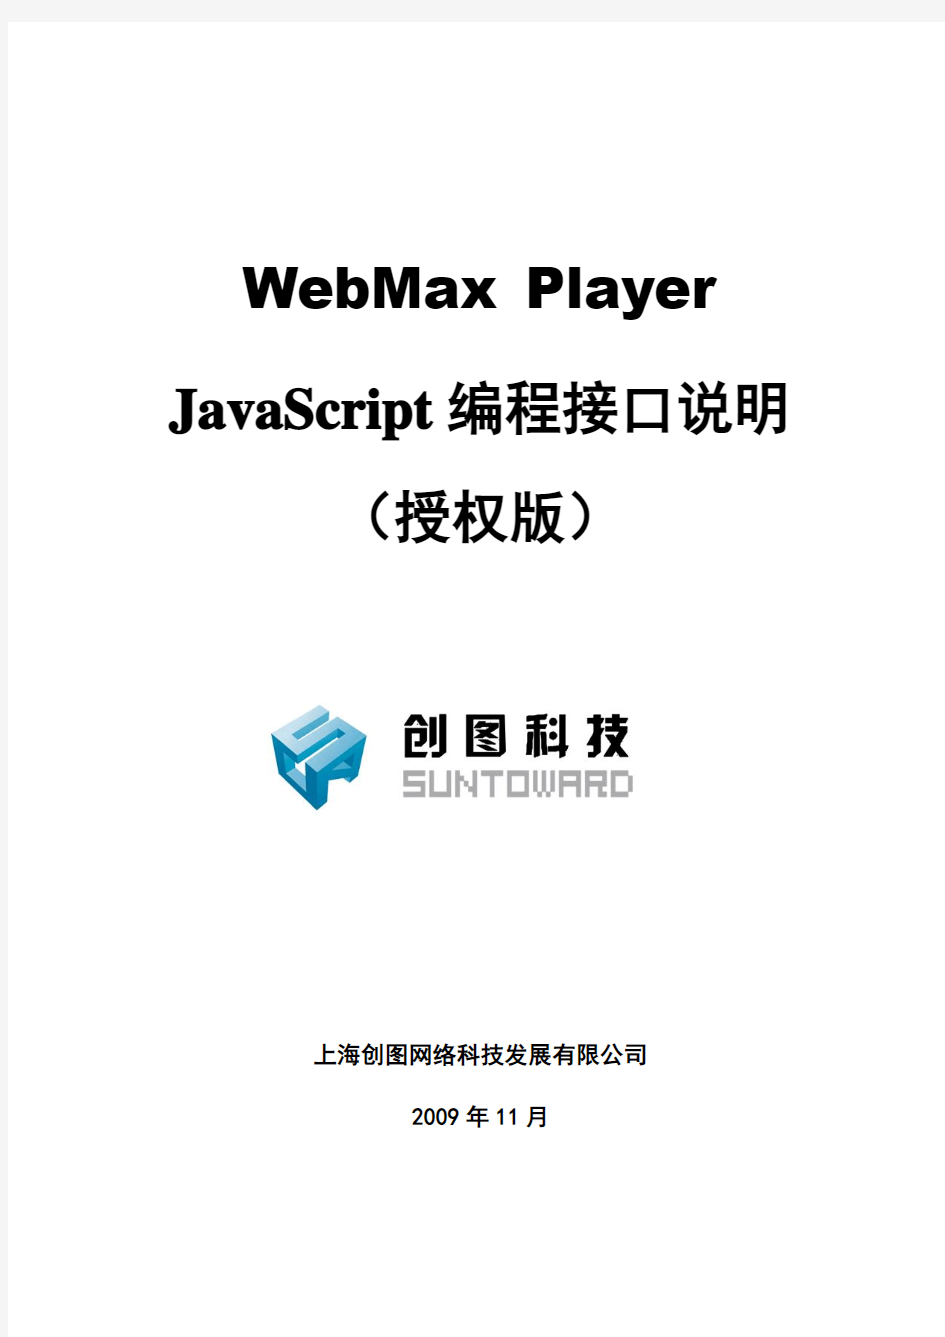 WebMax Player JavaScript编程接口说明(授权版)_20100204